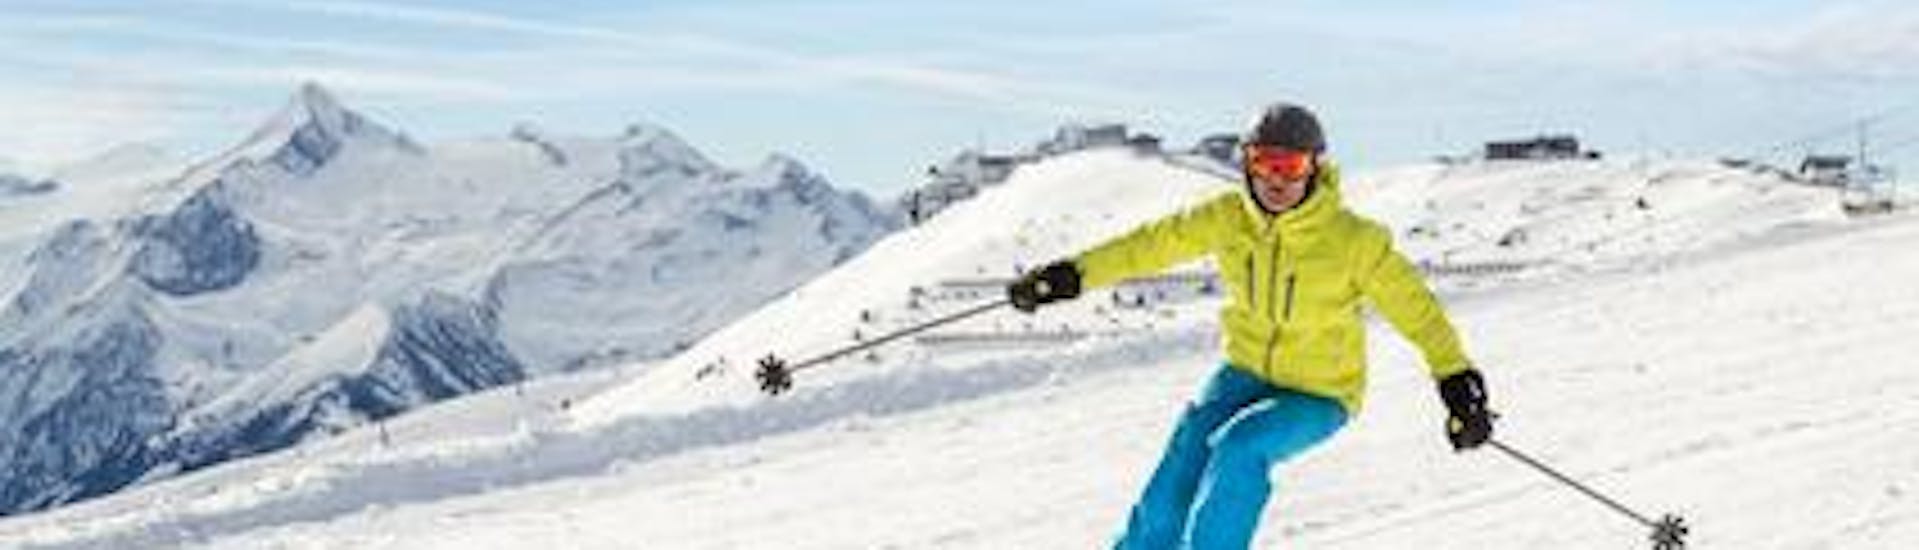 Een skiër raast de piste af tijdens zijn skilessen voor volwassenen voor beginners bij de Alpine Skischool Edelweiss.